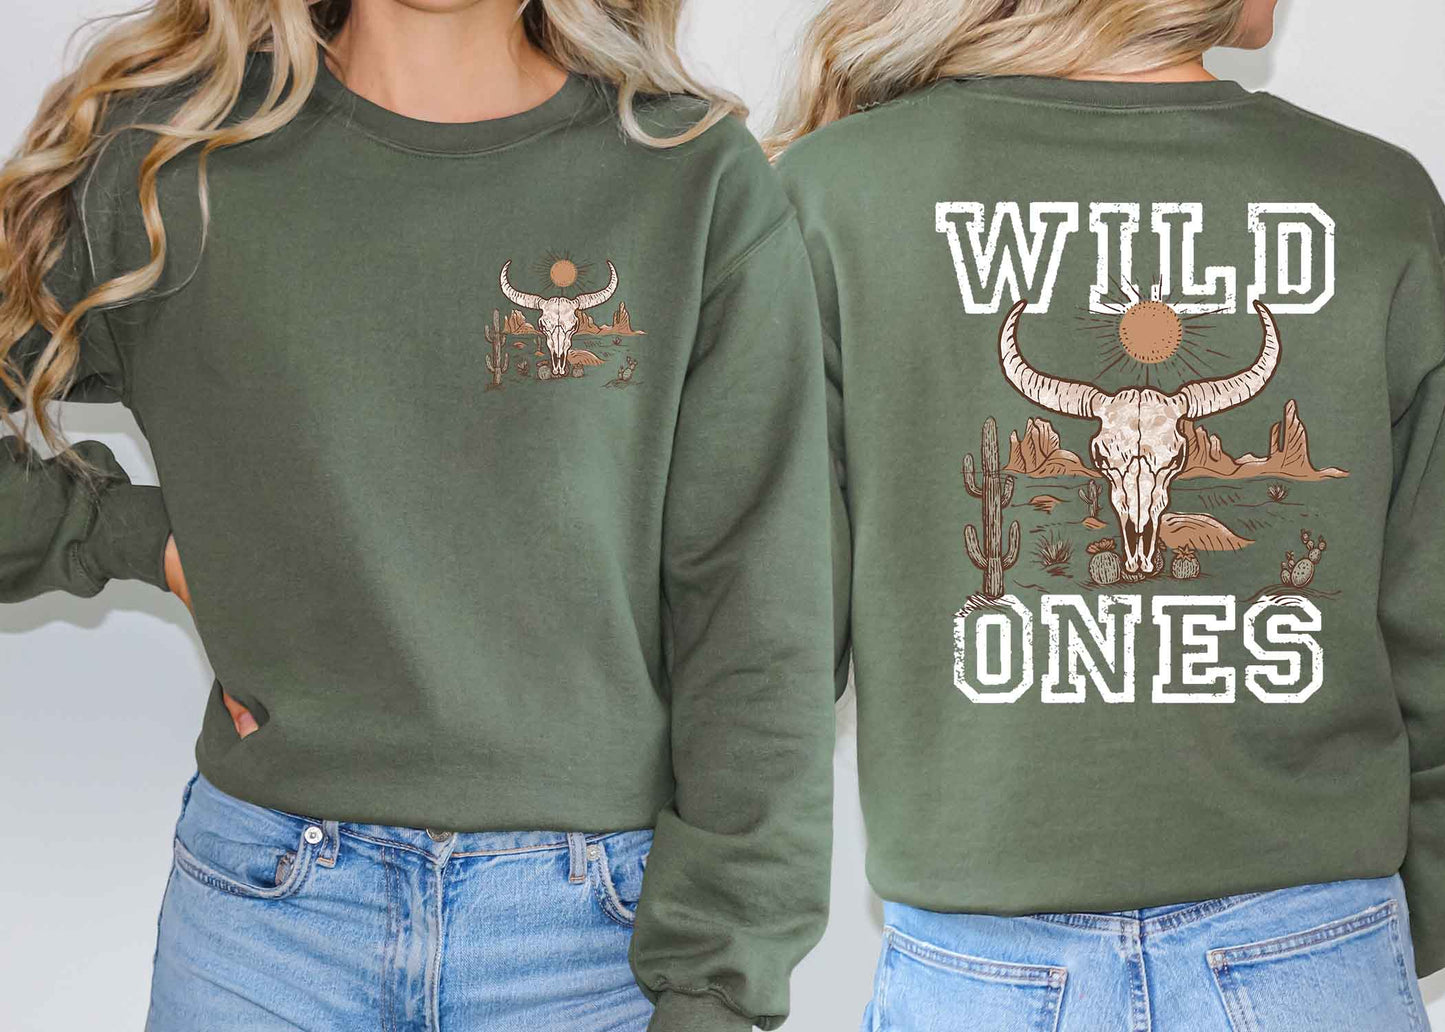 Wild ones shirt